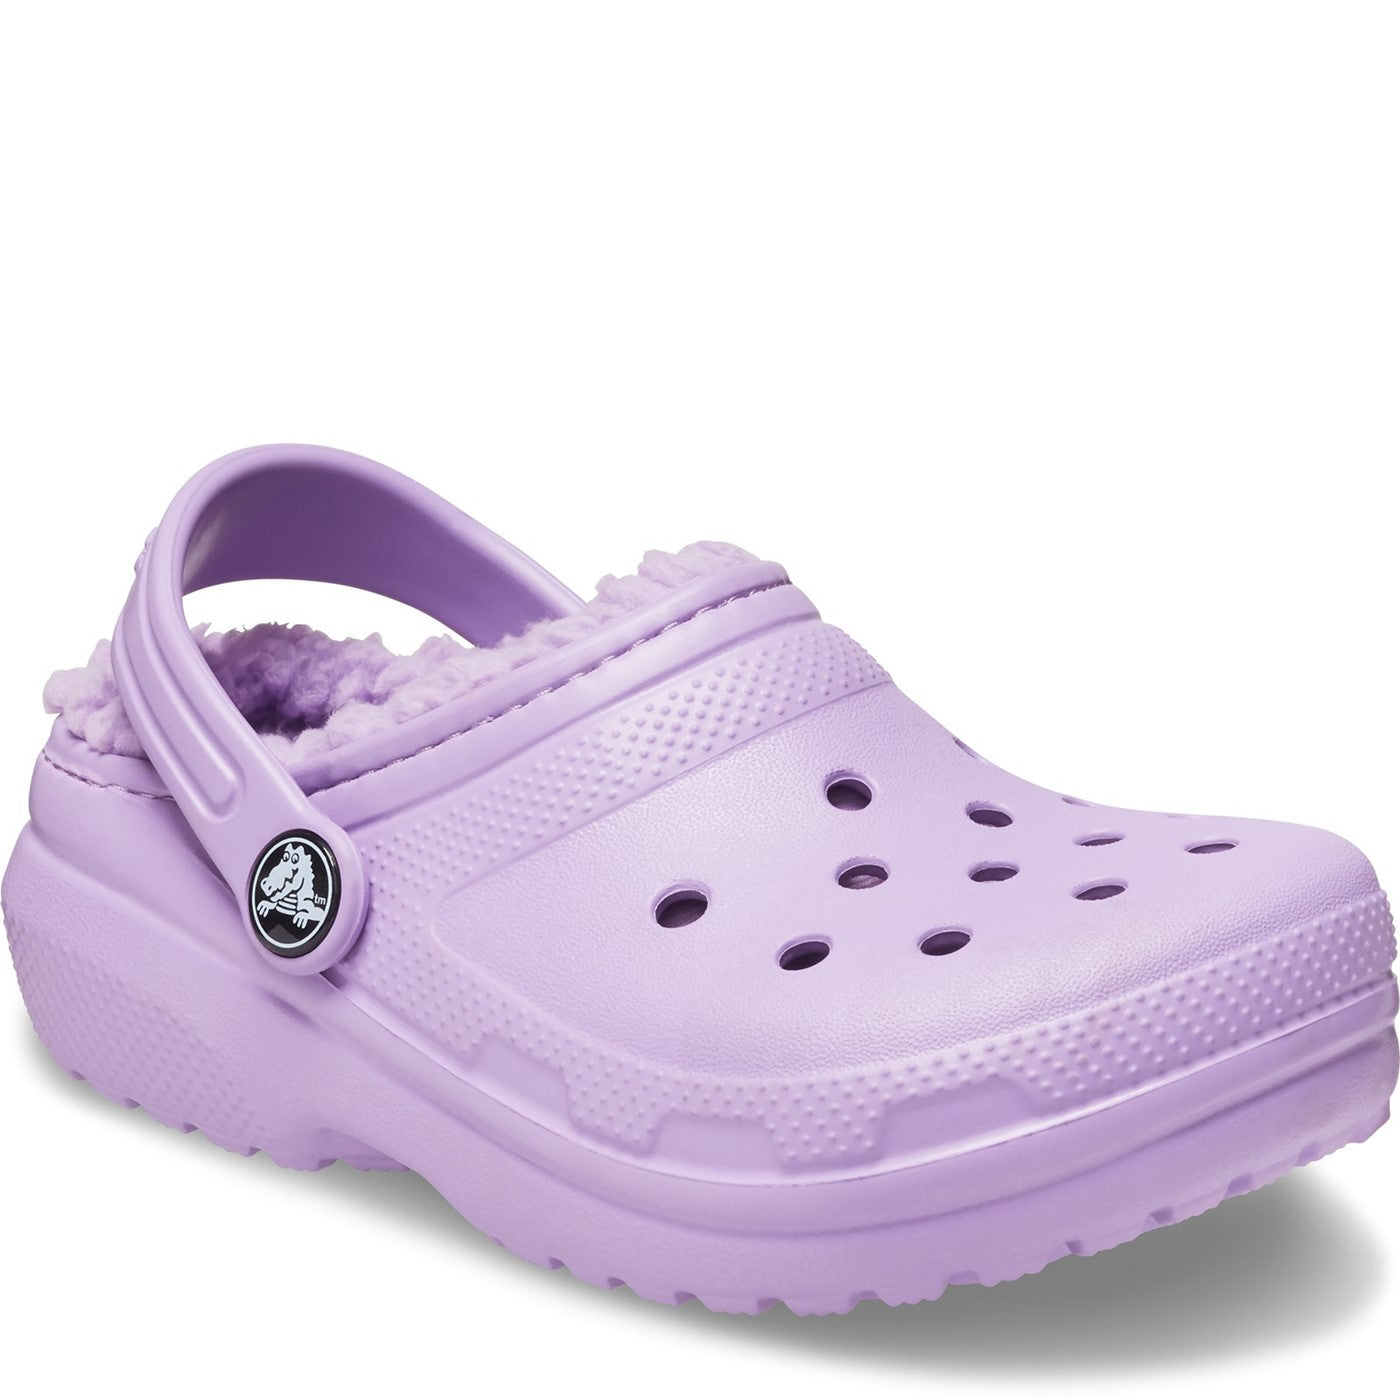 Kids' Crocs Classic Lined Clog